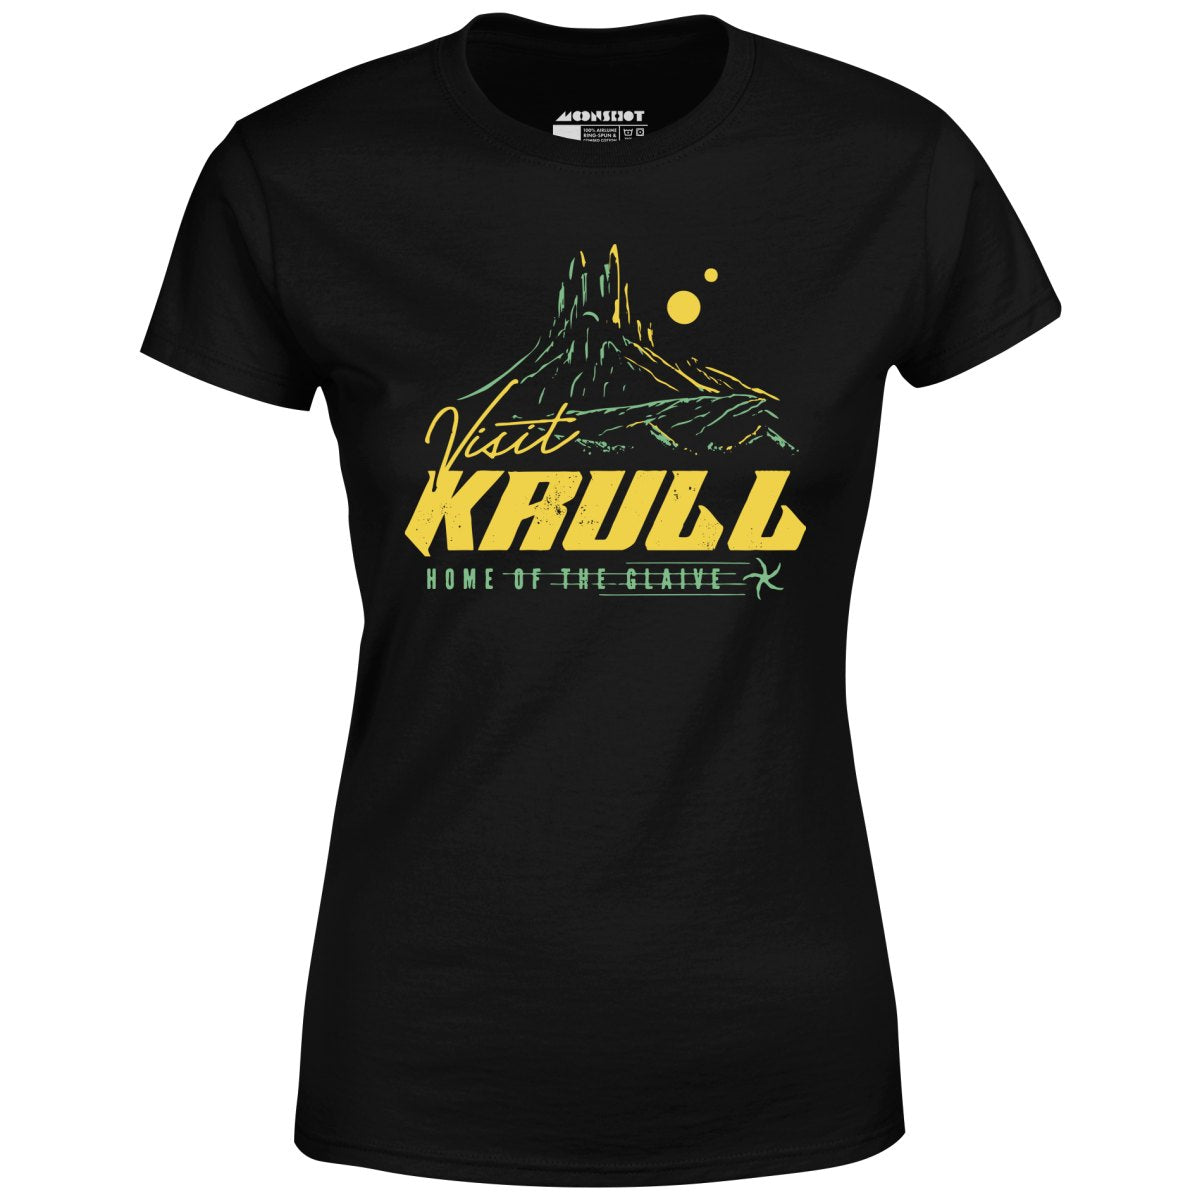 Visit Krull - Women's T-Shirt